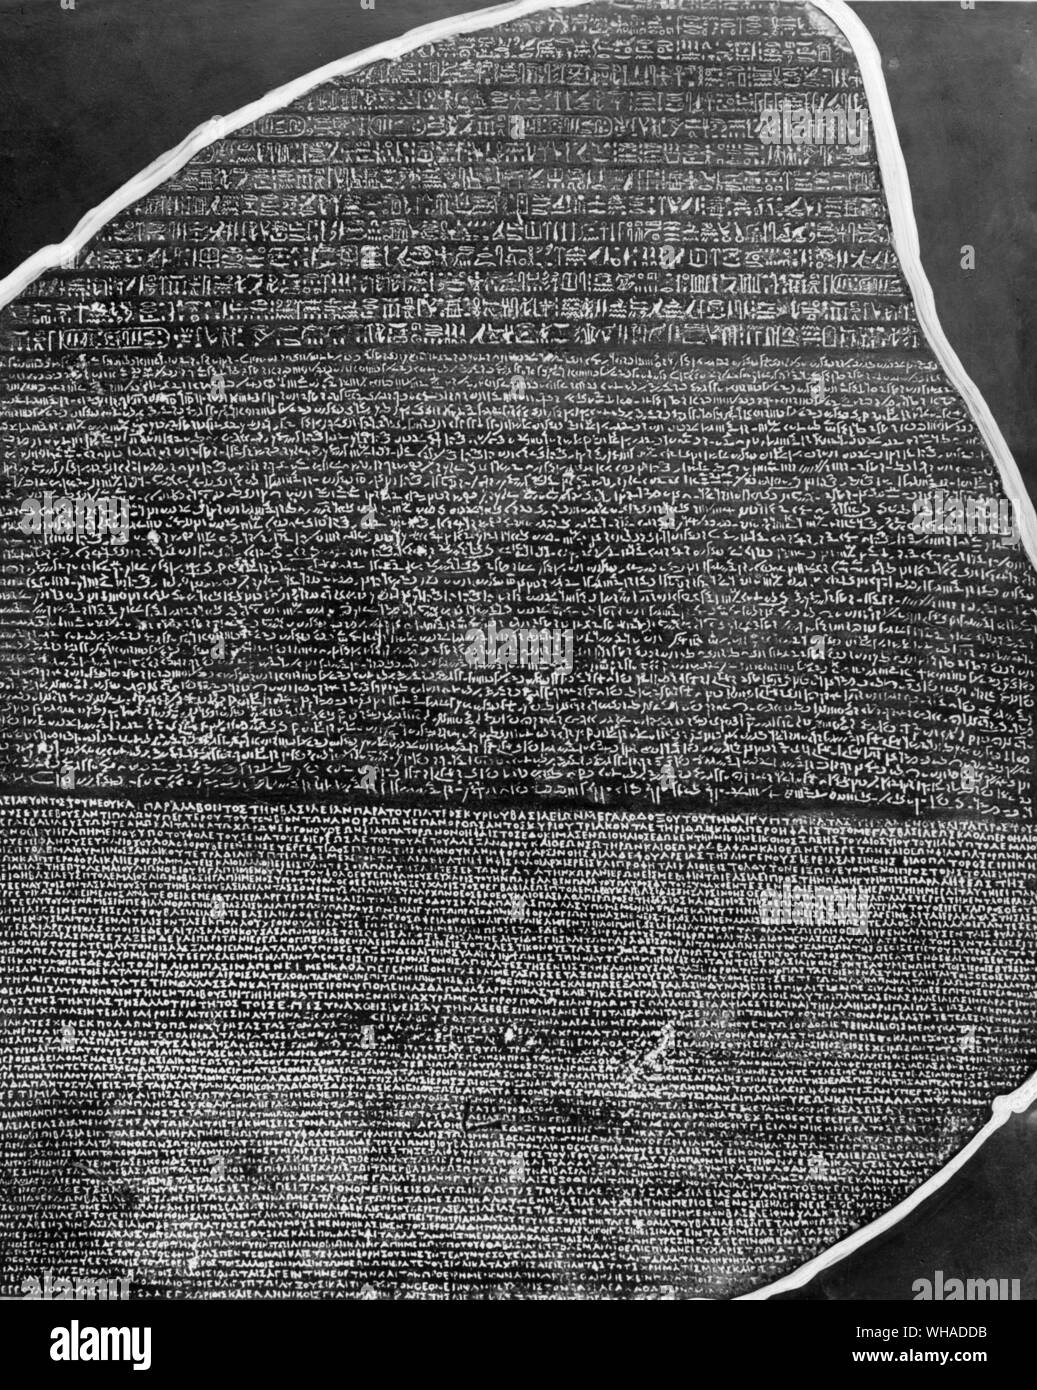 Rosetta Stone. Den Namen Rosetta der entscheidende Durchbruch in der Forschung bezüglich der ägyptischen Hieroglyphen bezieht. Es stellt insbesondere die Übersetzung von silent Symbole in eine lebendige Sprache, die notwendig ist, um den gesamten Inhalt der Informationen dieser Symbole zugänglich.. .. Den Namen Rosetta zum Stein von Rosette befestigt ist. Dies ist eine kompakte Basalt Tafel (114 x 72 x 28 cm), die im Juli 1799 in der kleinen ägyptischen Dorf Rosette (Raschid), die in der Western Delta des Nils ist gefunden wurde. Heute der Stein im Britischen Museum in London aufbewahrt wird. Es enthält Stockfoto